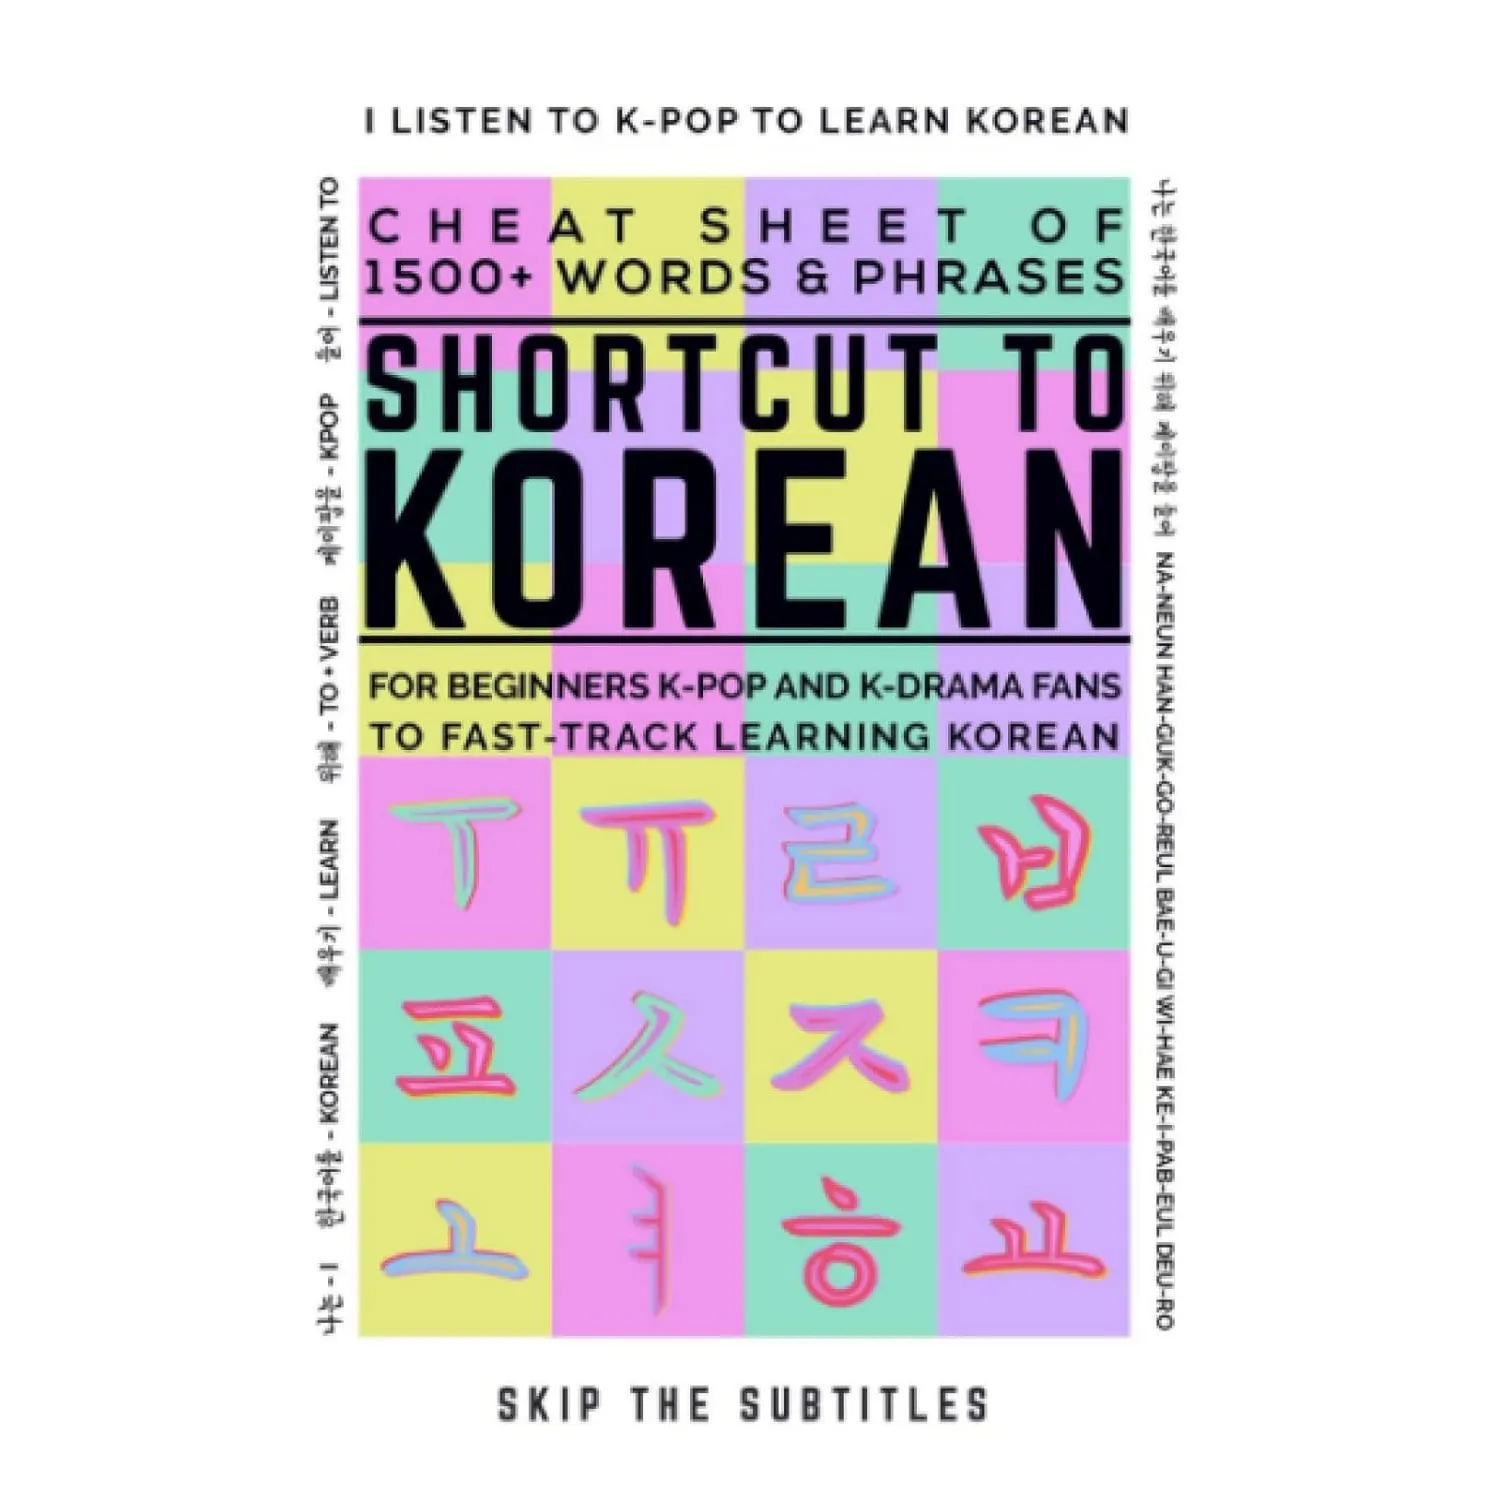 Shortcut to Korean